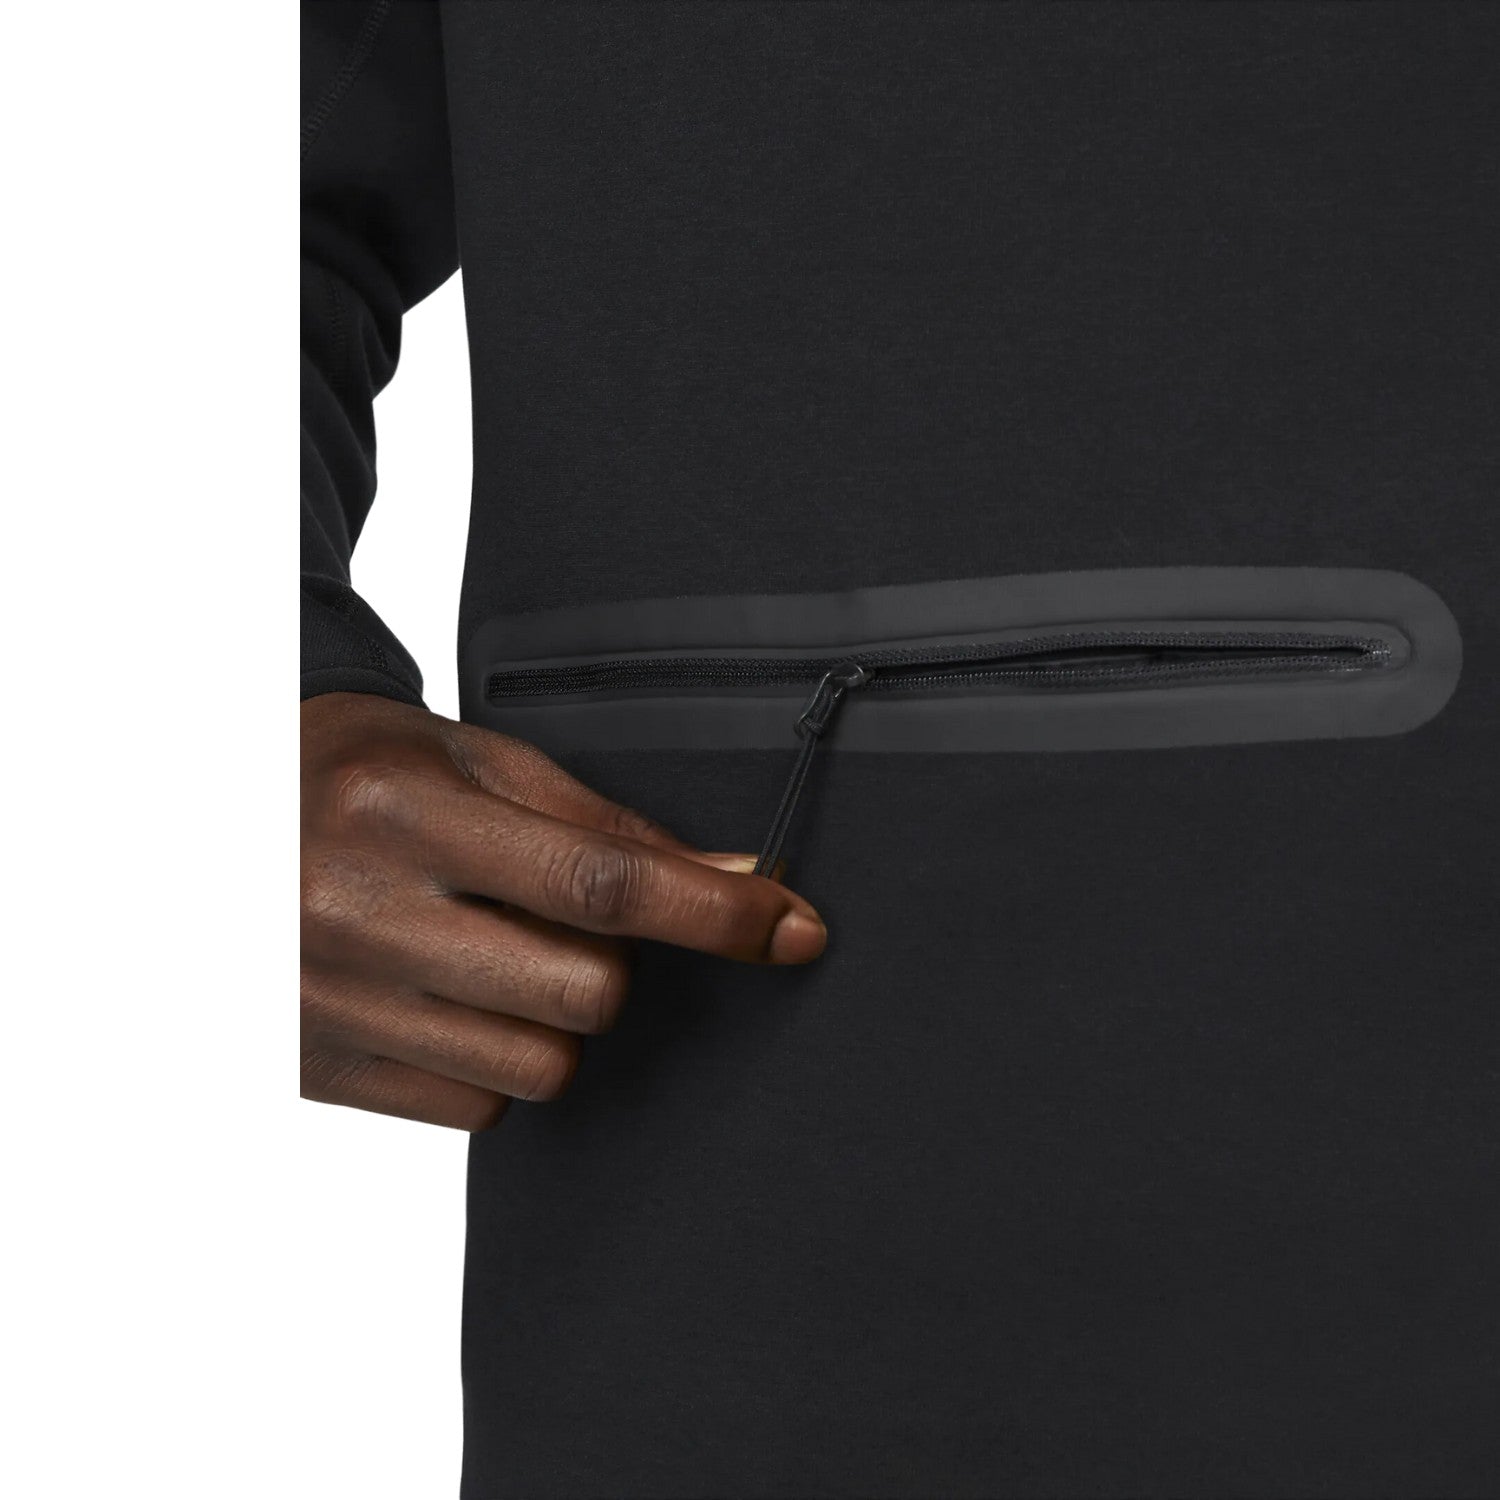 Nike Sportswear Tech Fleece Men's 1/2-zip Sweatshirt Mens Style : Fb7998